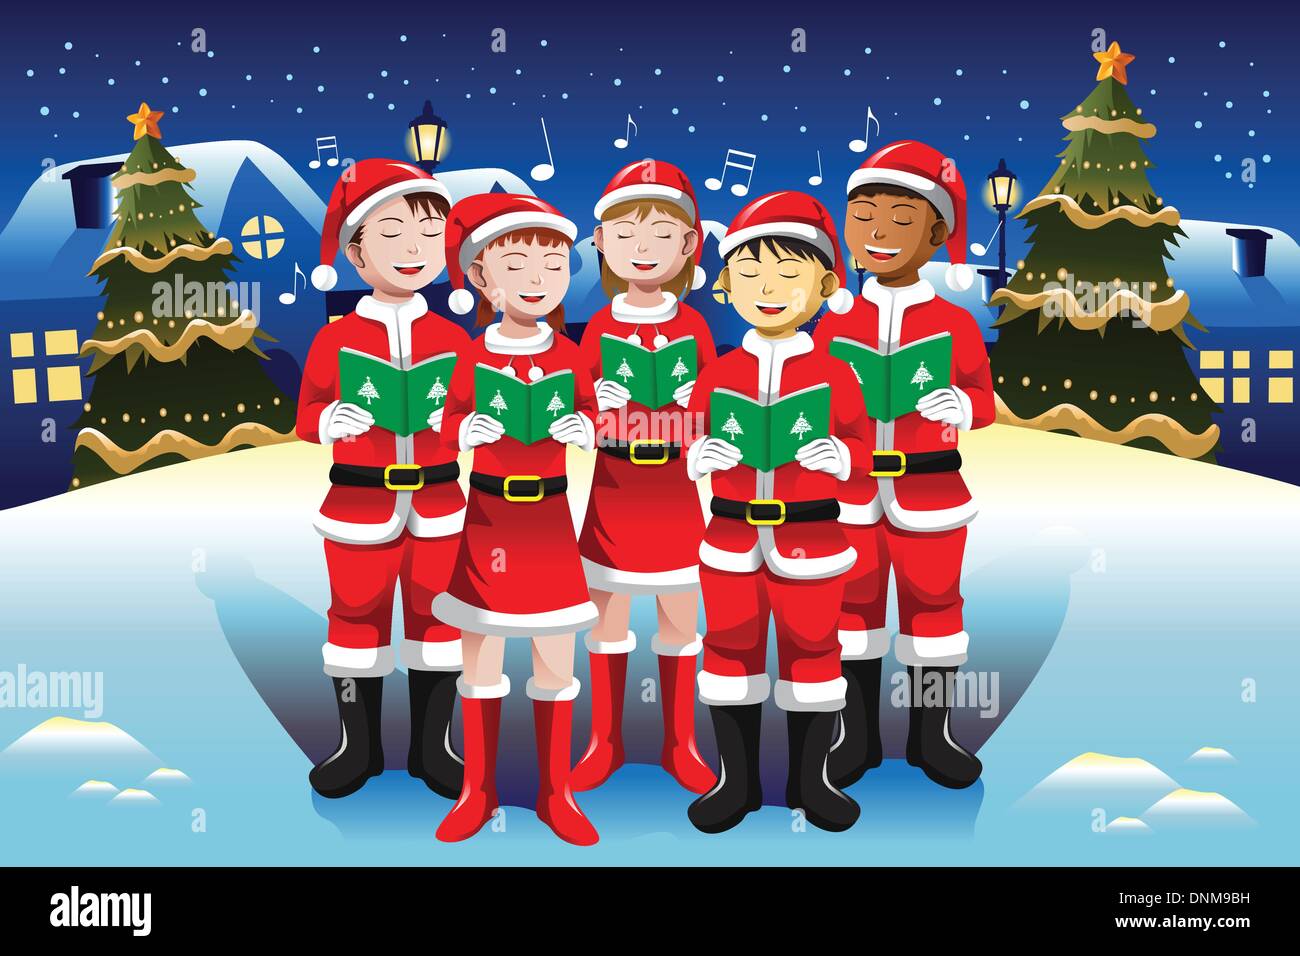 Coro Di Natale.Una Illustrazione Vettoriale Di Contenti I Bambini A Cantare In Coro Di Natale Immagine E Vettoriale Alamy